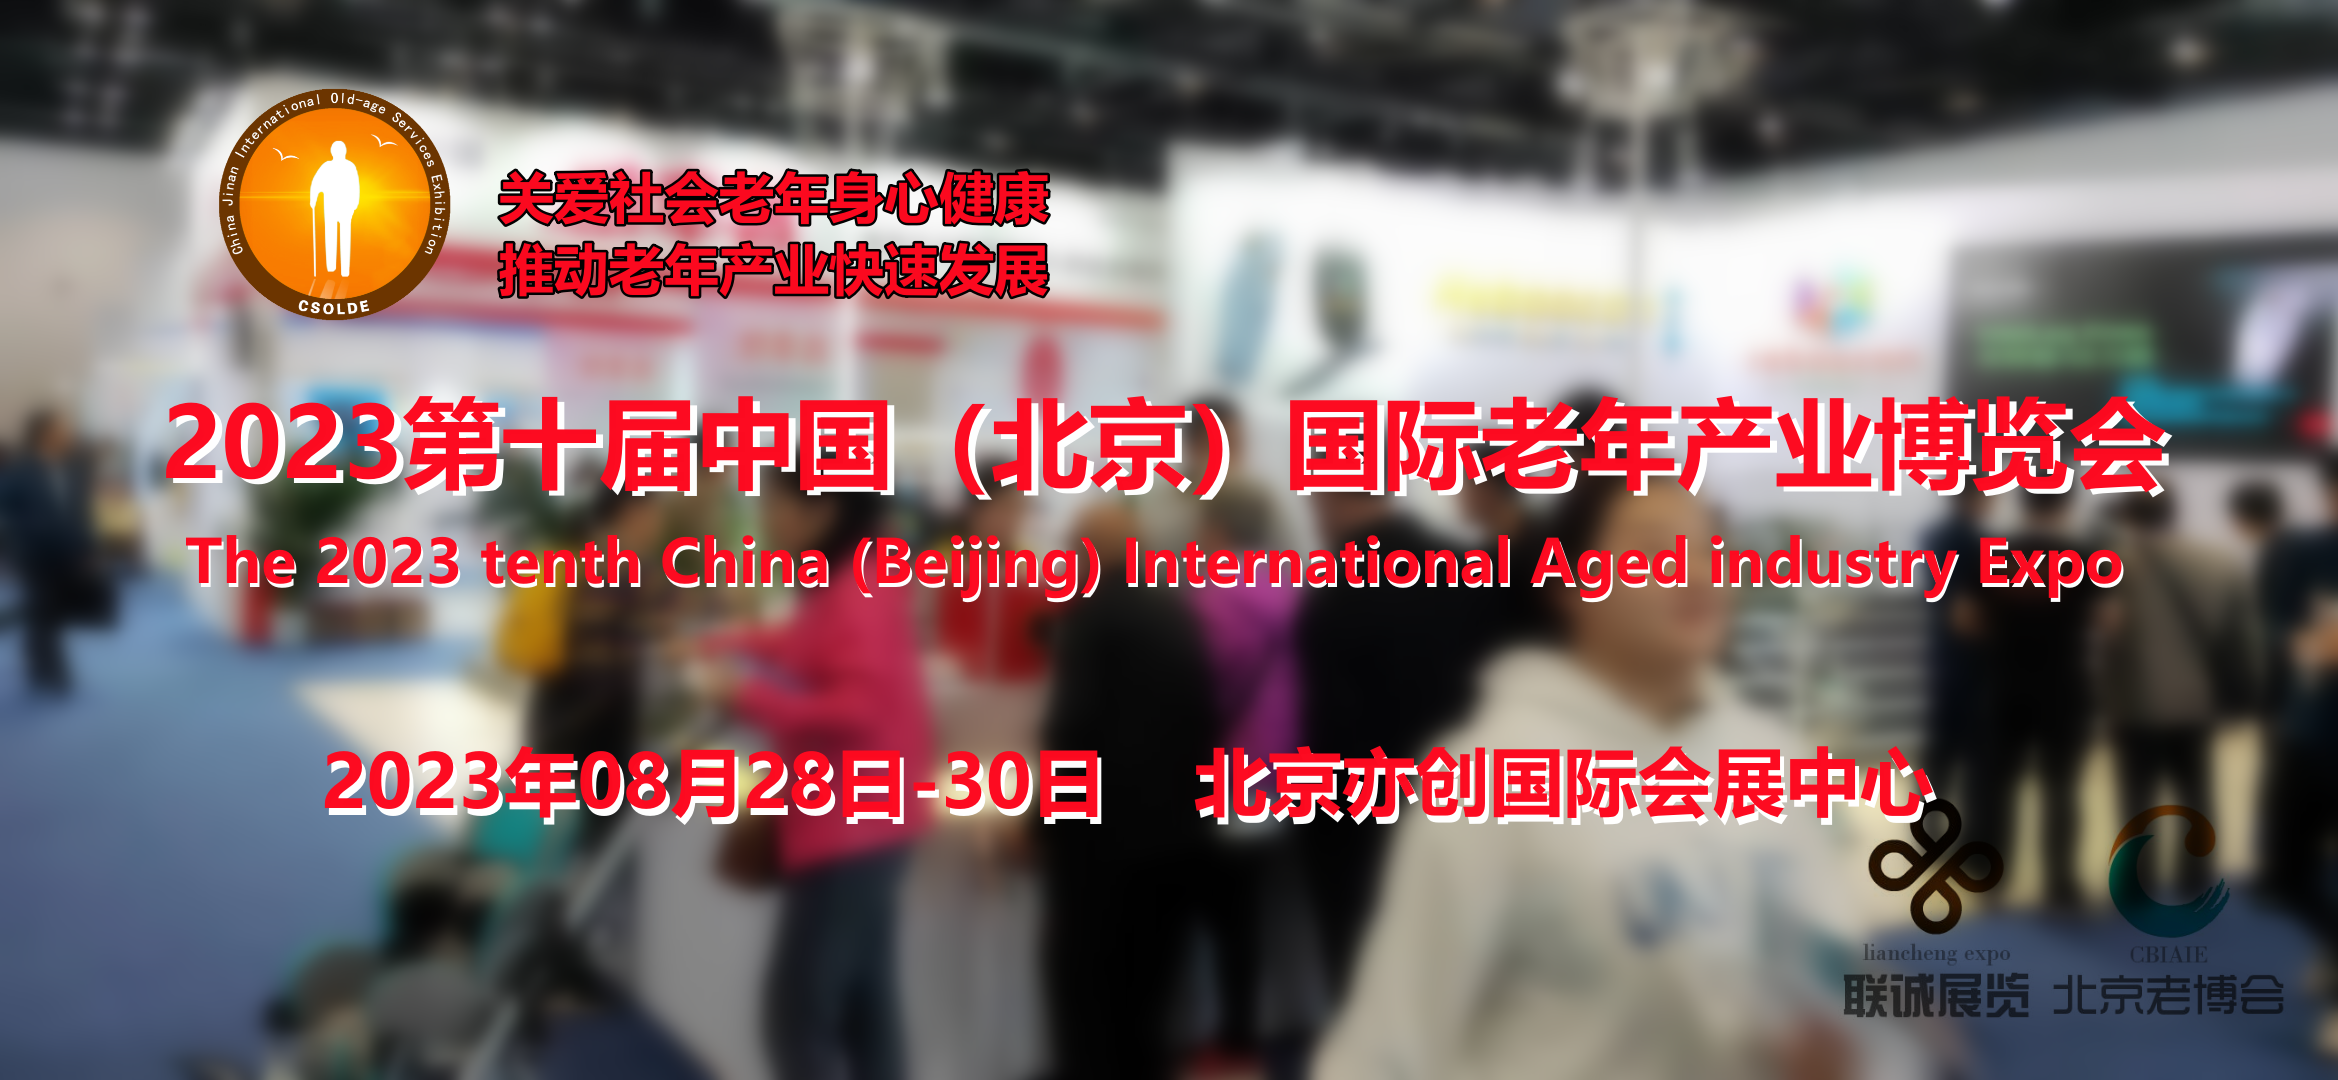 共创、共建、共享，2023北京老博会陪伴企业成长·宣传计划开启